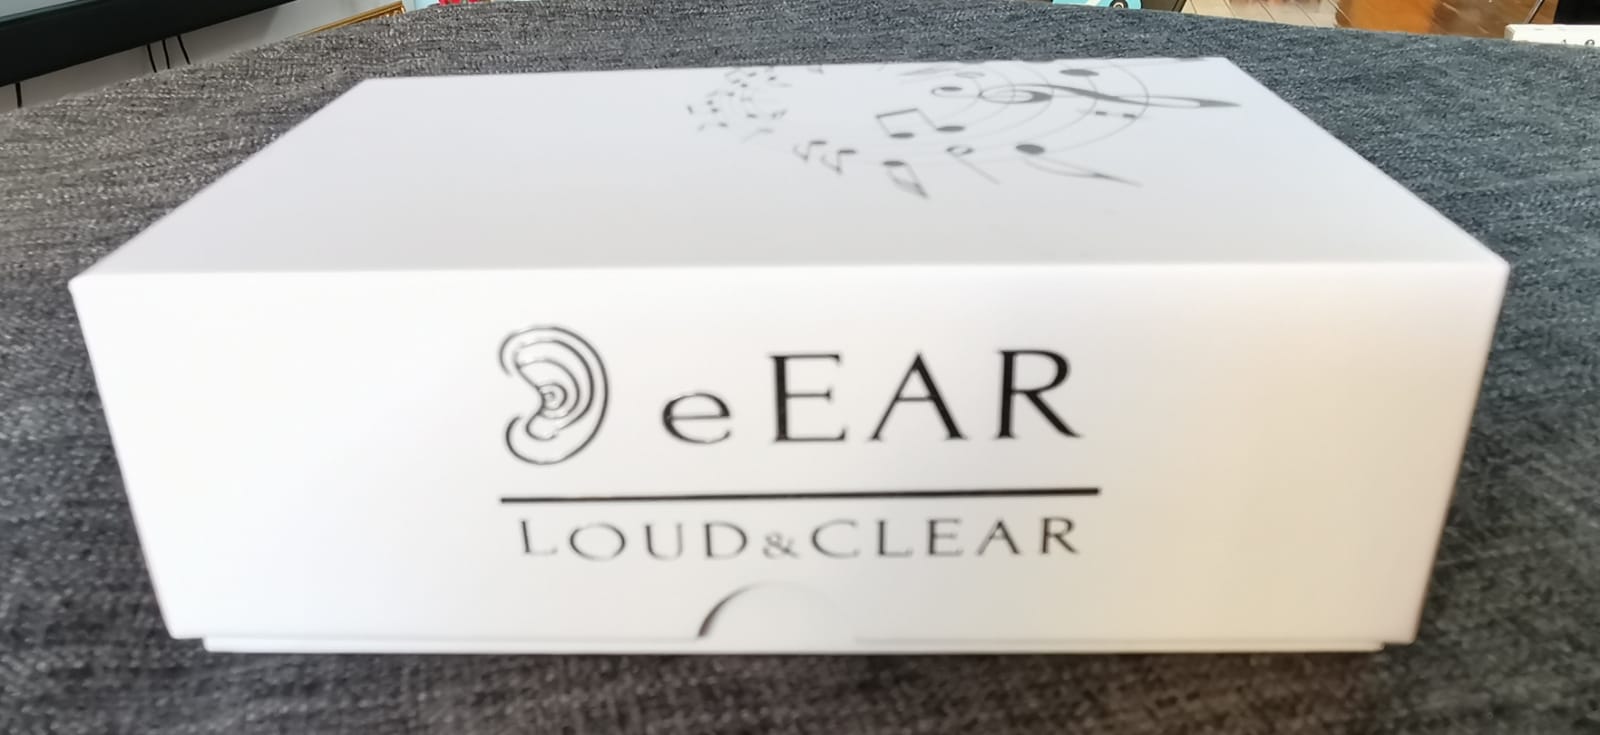 eEAR® Digital Hearing Aid, CIC (Complet in Canal), eEar CIC-T25 Conçu et fabriqué aux États-Unis Pour l'oreille du côté droit 79,88 $, Pour l'oreille du côté gauche 79,88 $ pour la paire (droite + gauche) = 149,88 $ Vendu 35 000+ dans le monde